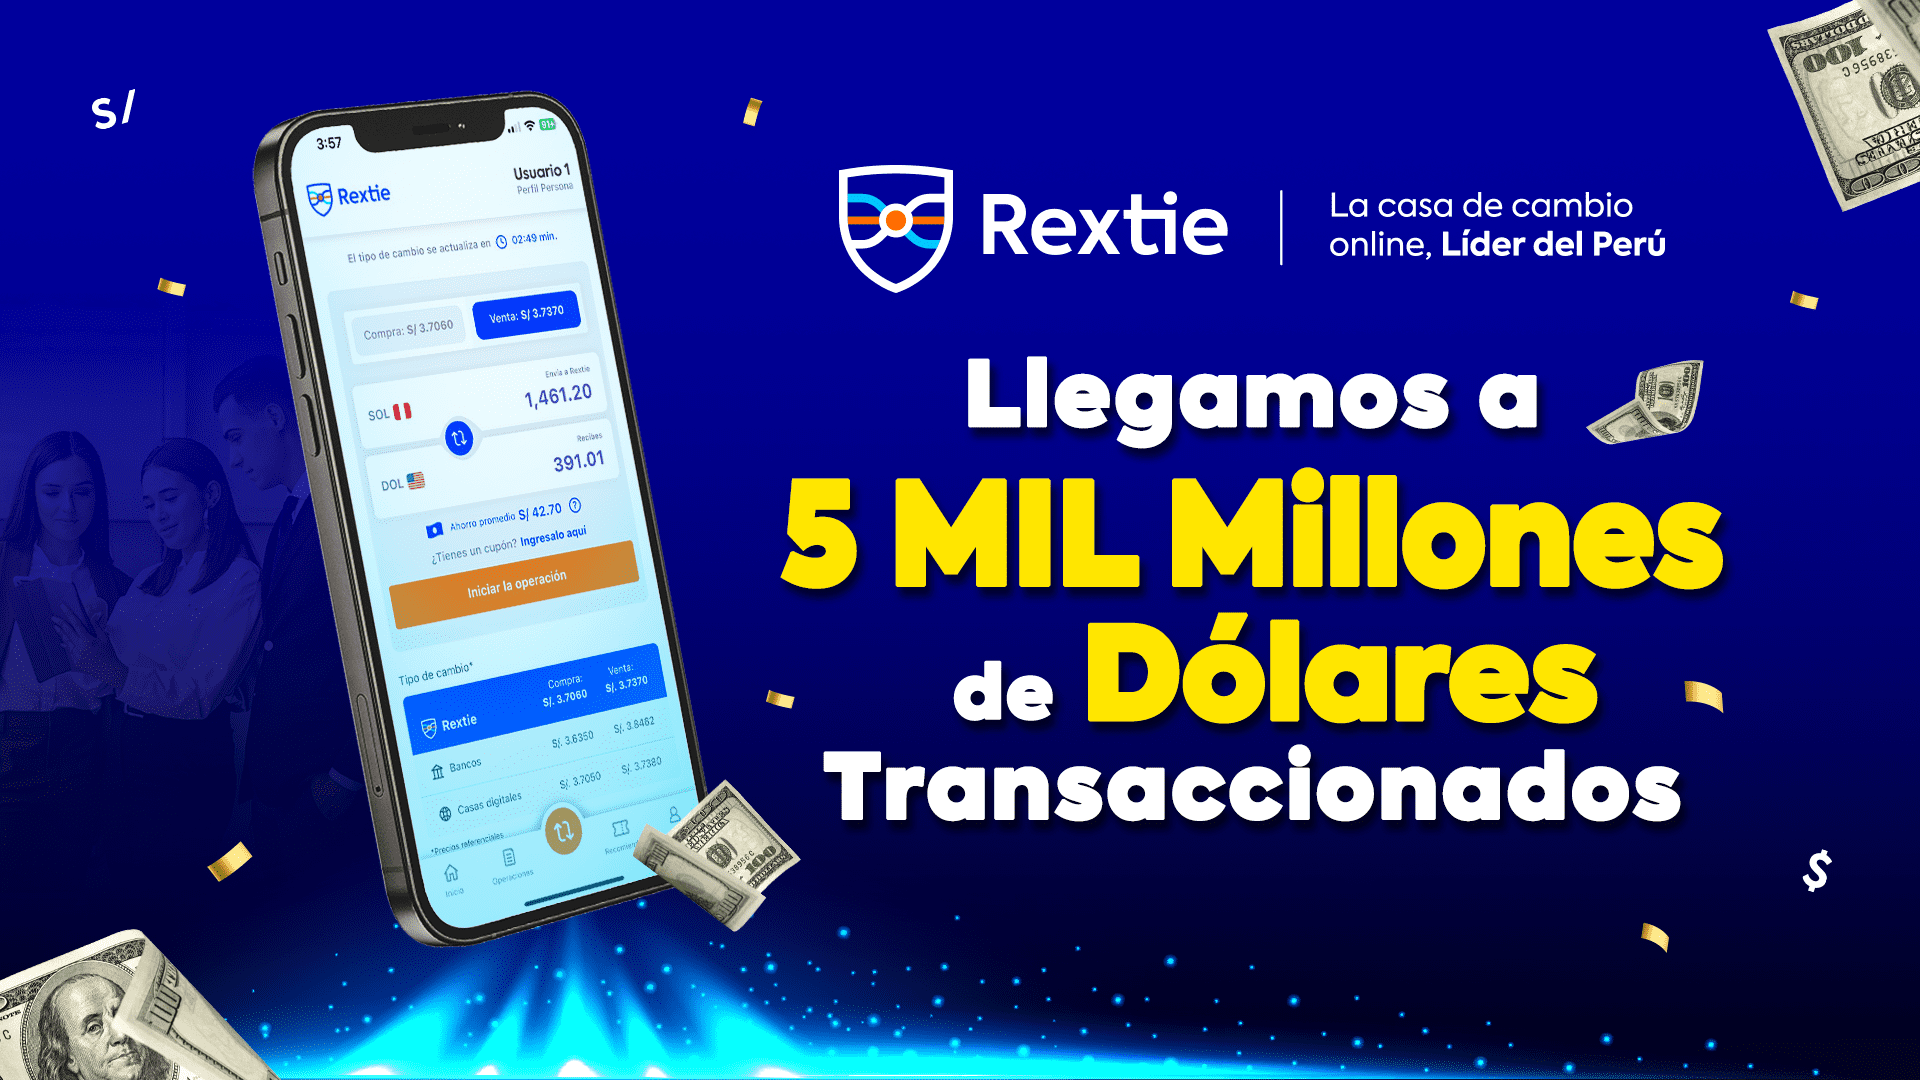 ¡Rextie ha llegado a los 5 mil millones de dólares transaccionados!